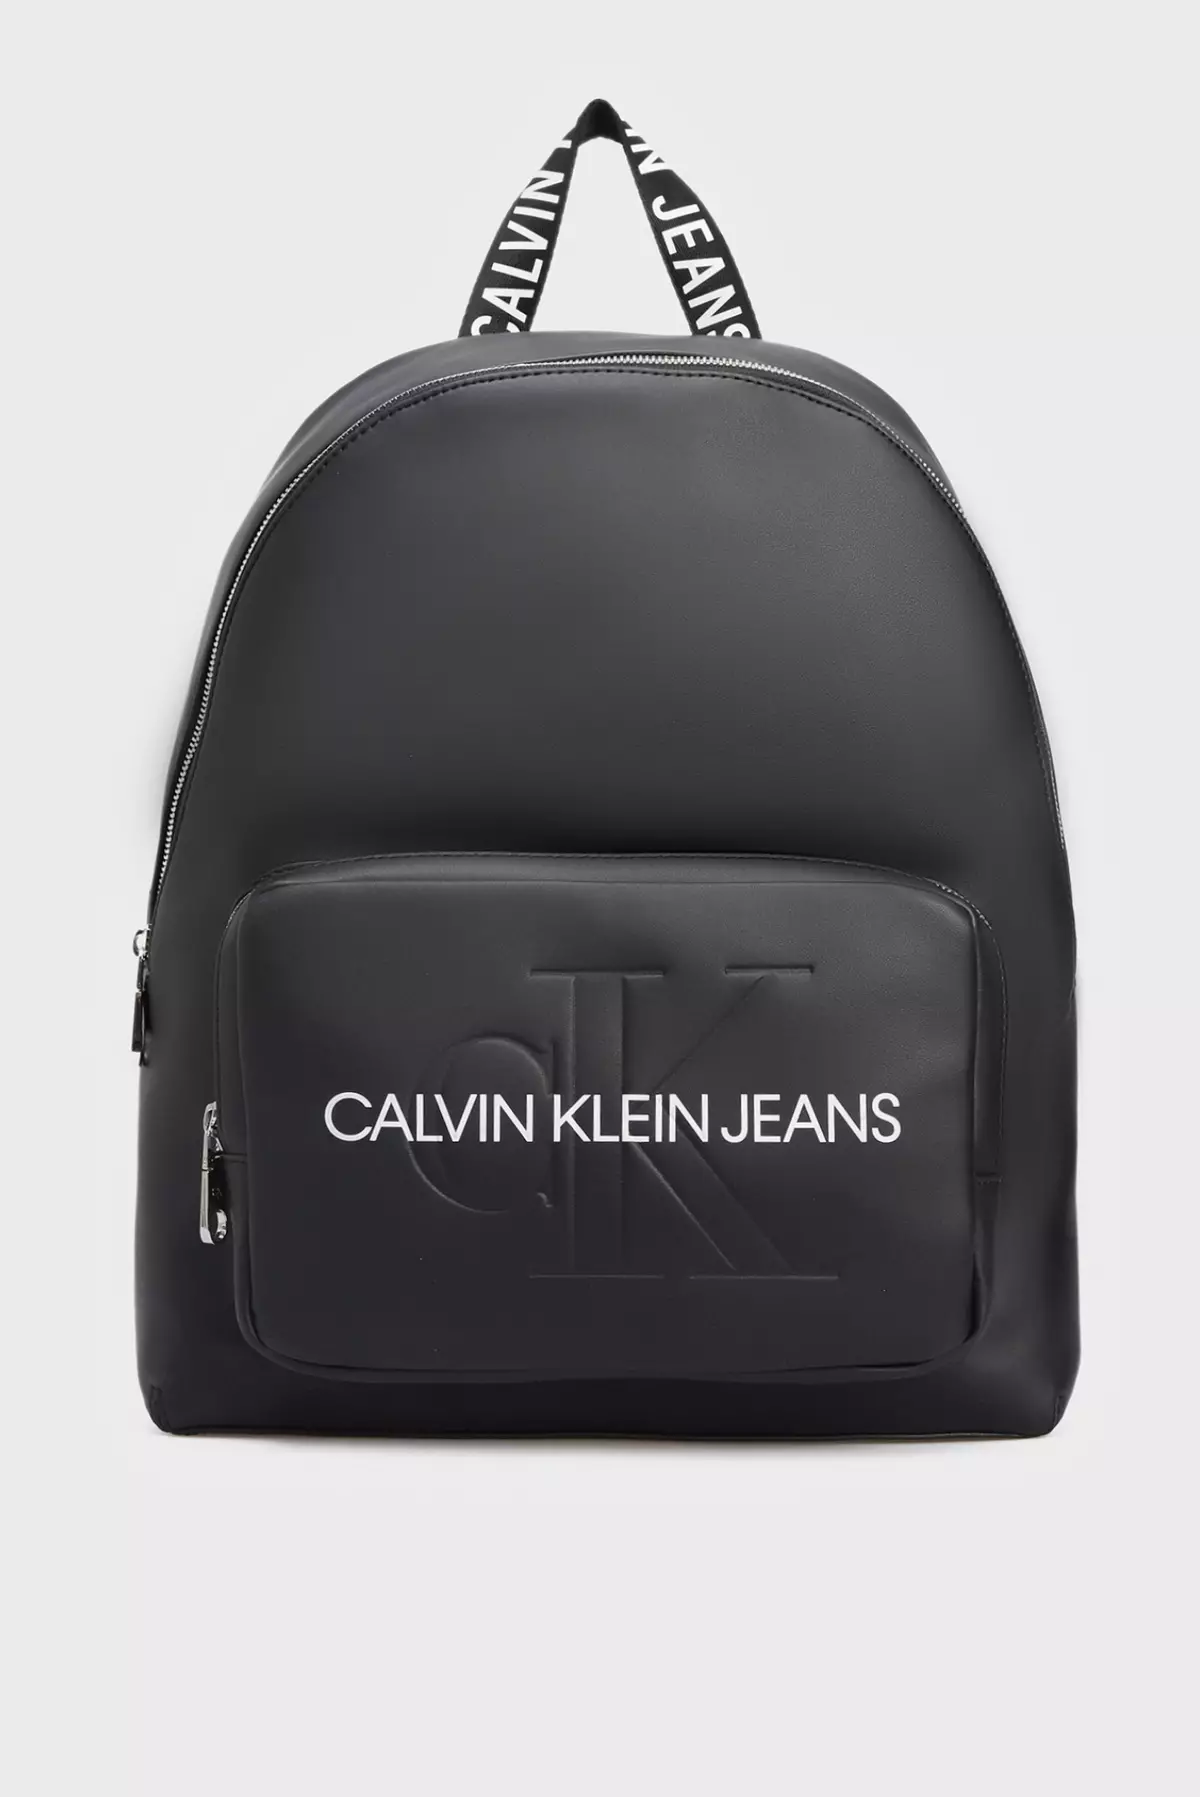 Калвин Клейн рюкзактары: қара әйелдер, ерлер, былғары қызыл, ақ, сары, монограммамен және басқа түстермен қапталған сөмкелер - рюкзактар 15401_11